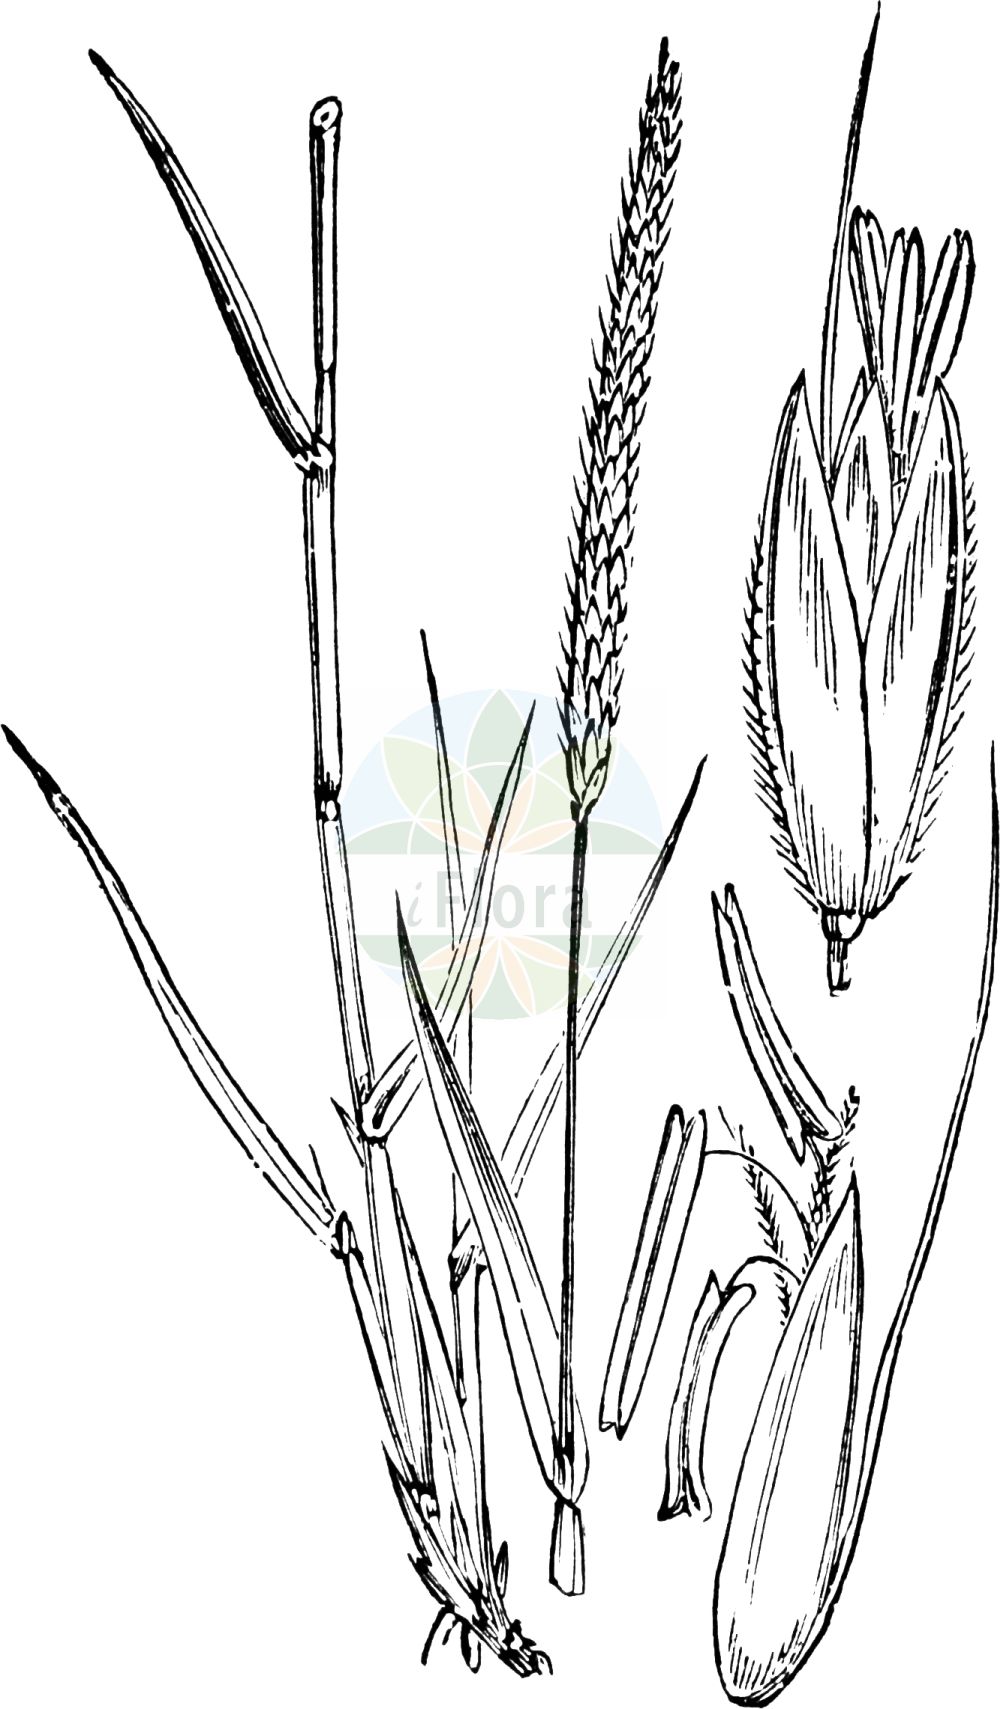 Historische Abbildung von Alopecurus myosuroides (Acker-Fuchsschwanzgras - Black-grass). Das Bild zeigt Blatt, Bluete, Frucht und Same. ---- Historical Drawing of Alopecurus myosuroides (Acker-Fuchsschwanzgras - Black-grass). The image is showing leaf, flower, fruit and seed.(Alopecurus myosuroides,Acker-Fuchsschwanzgras,Black-grass,Alopecurus agrestis,Alopecurus myosuroides,Acker-Fuchsschwanzgras,Acker-Fuchsschwanz,Black-grass,Black Twitch,Slender Foxtail,Slender Meadow Foxtail,Alopecurus,Fuchsschwanzgras,Foxtail,Poaceae,Süßgräser,Grass family,Blatt,Bluete,Frucht,Same,leaf,flower,fruit,seed,Fitch et al. (1880))